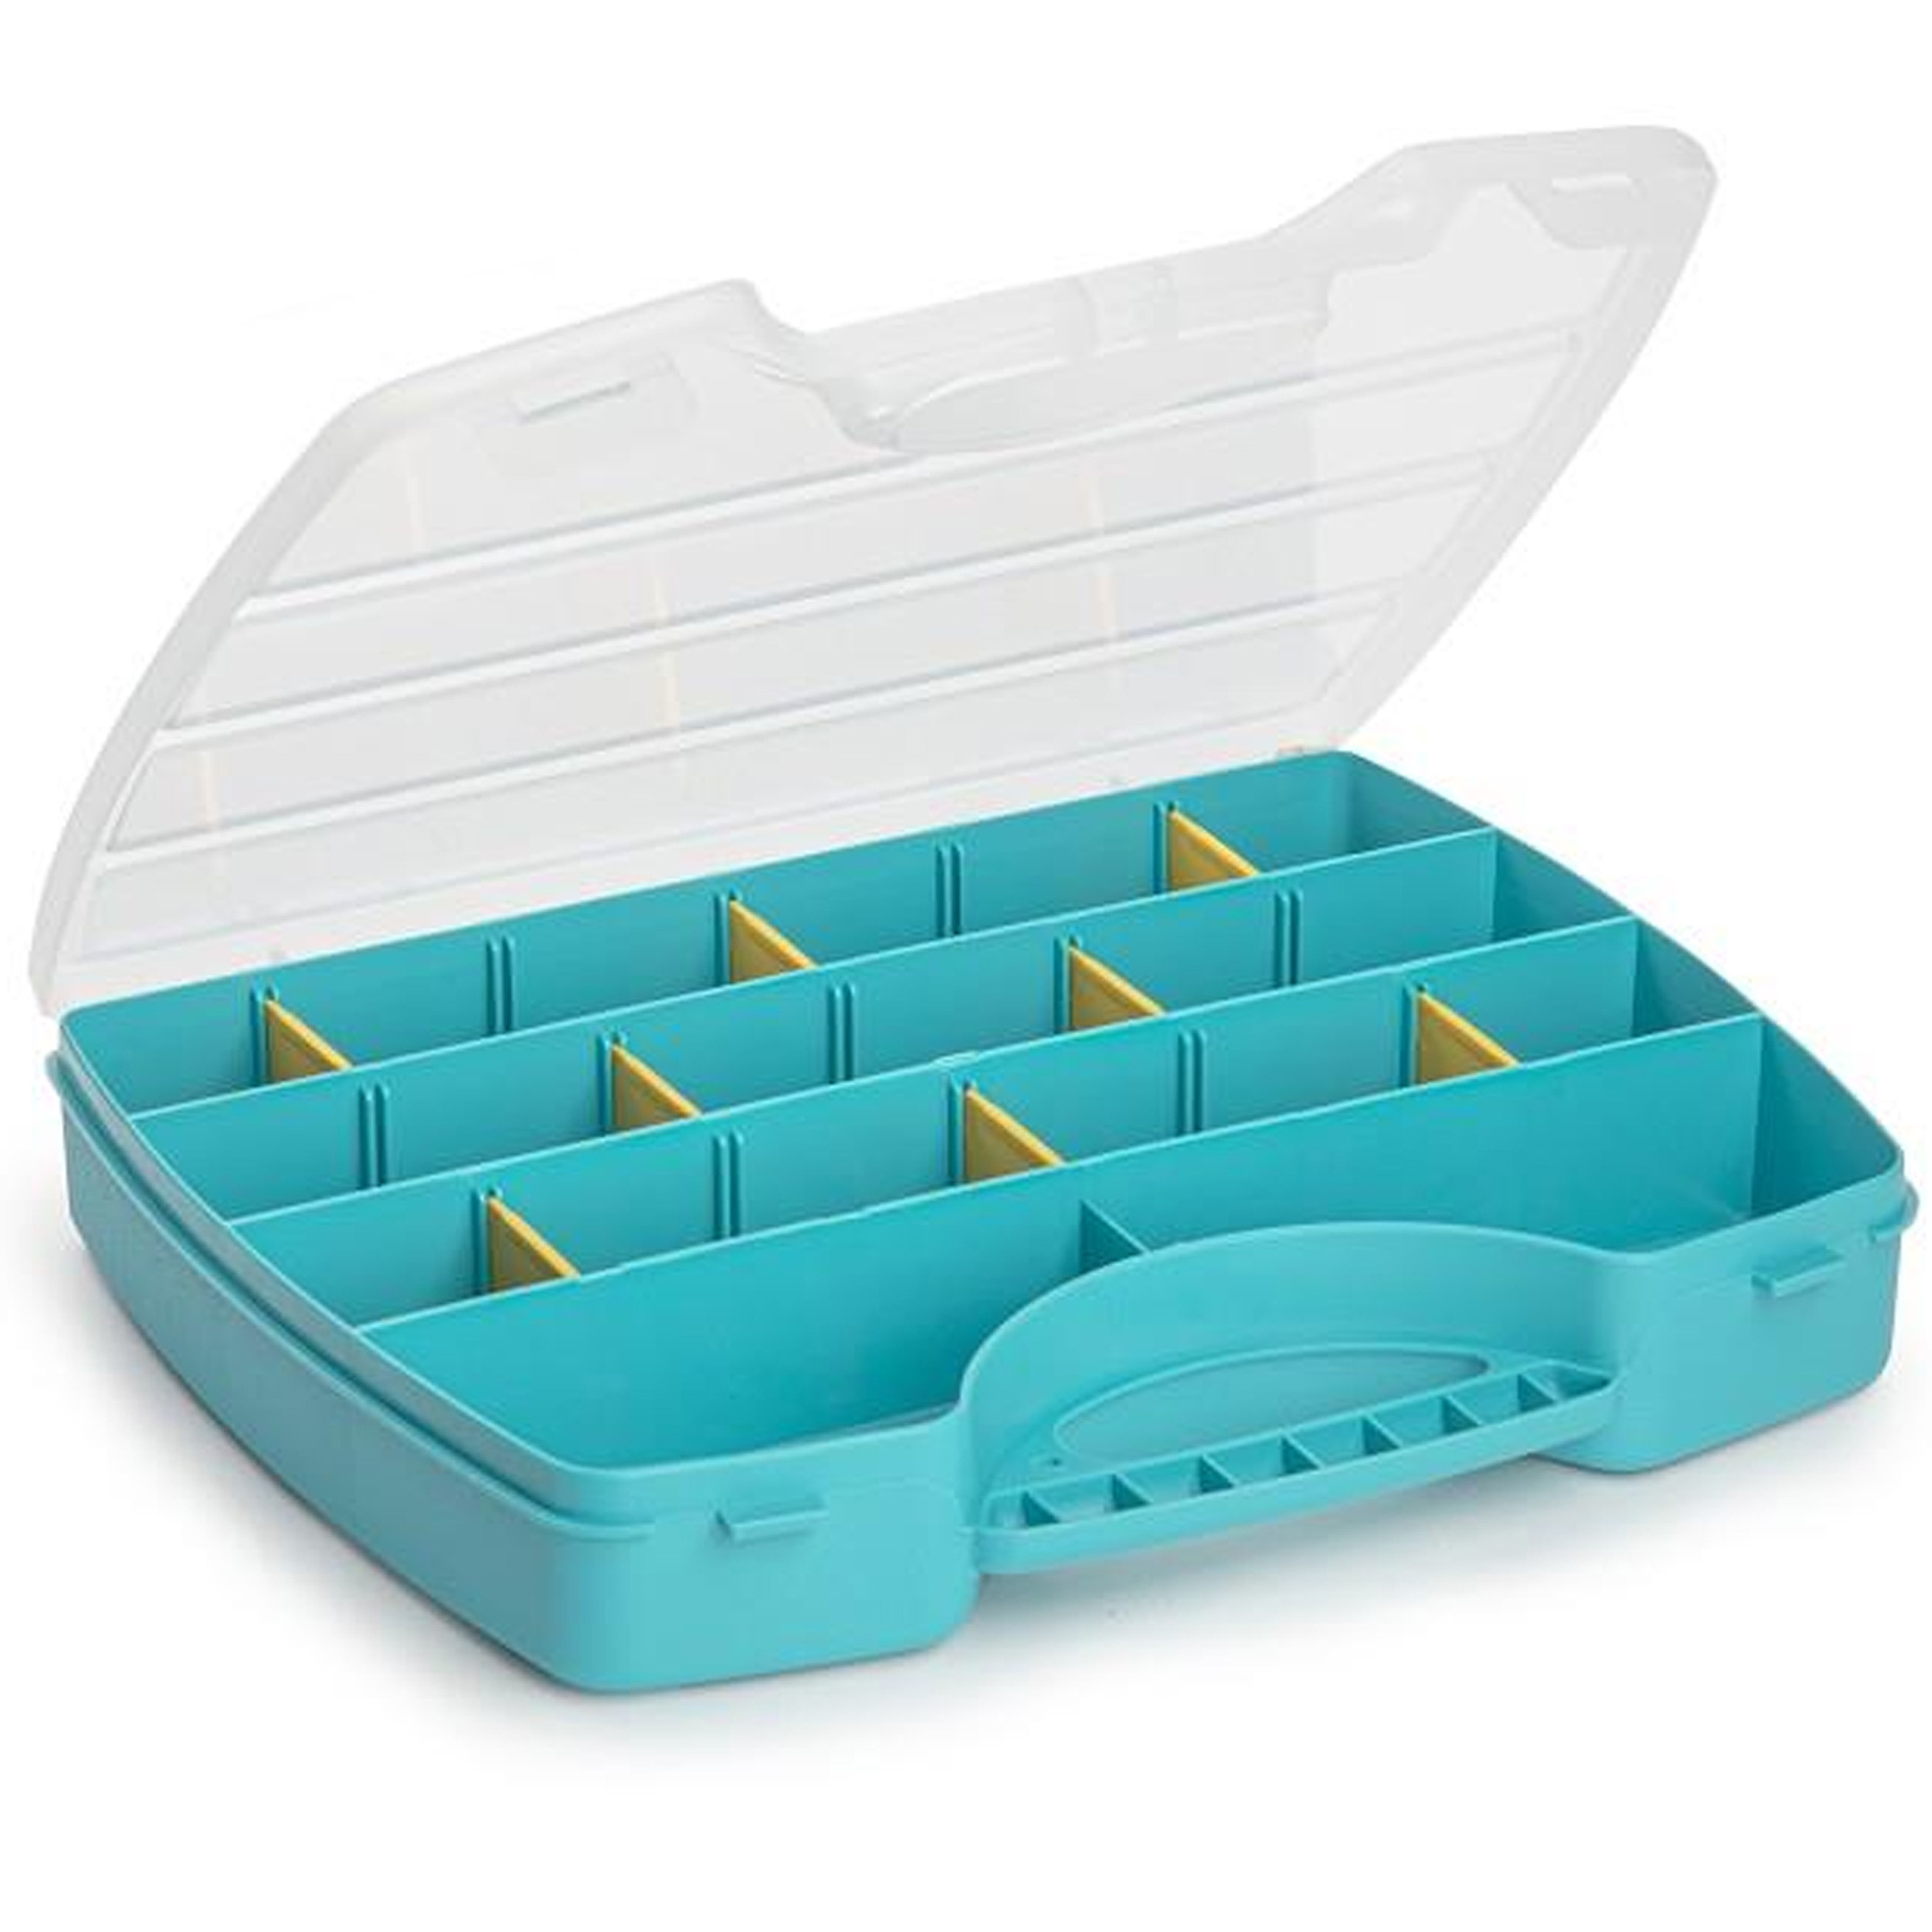 Plasticforte Opbergkoffertje-opbergdoos-sorteerbox 13-vaks kunststof blauw 25 x 21 x 4 cm